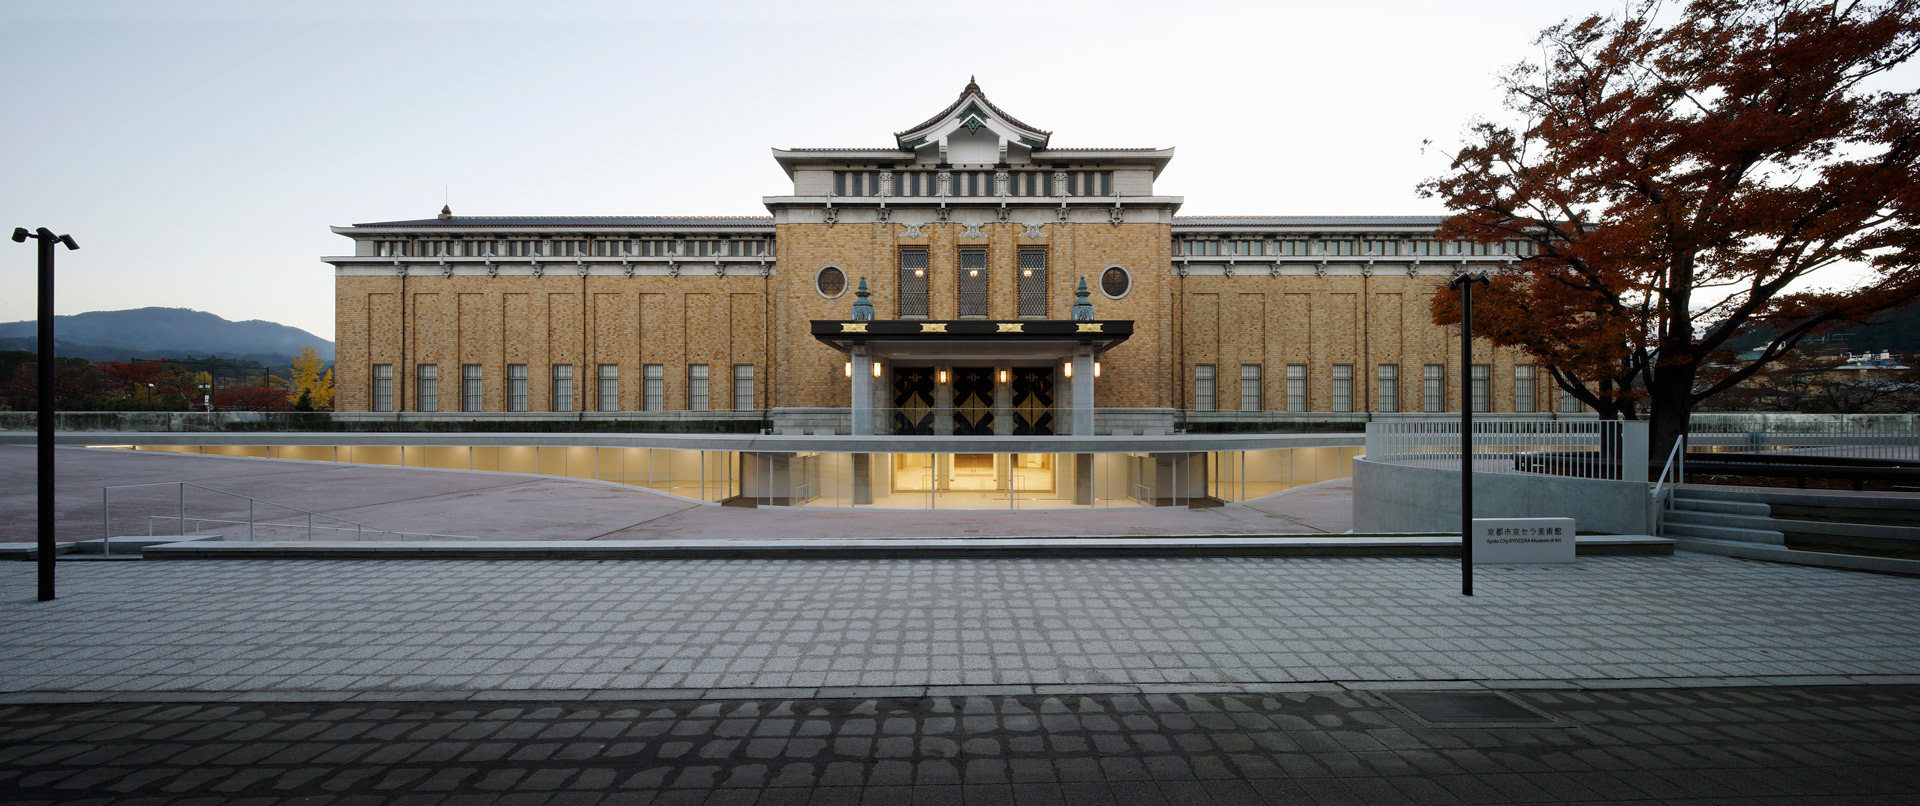 Gallery of Louis Vuitton Maison Osaka Midosuji, Aoki & Shinagawa +  Associates